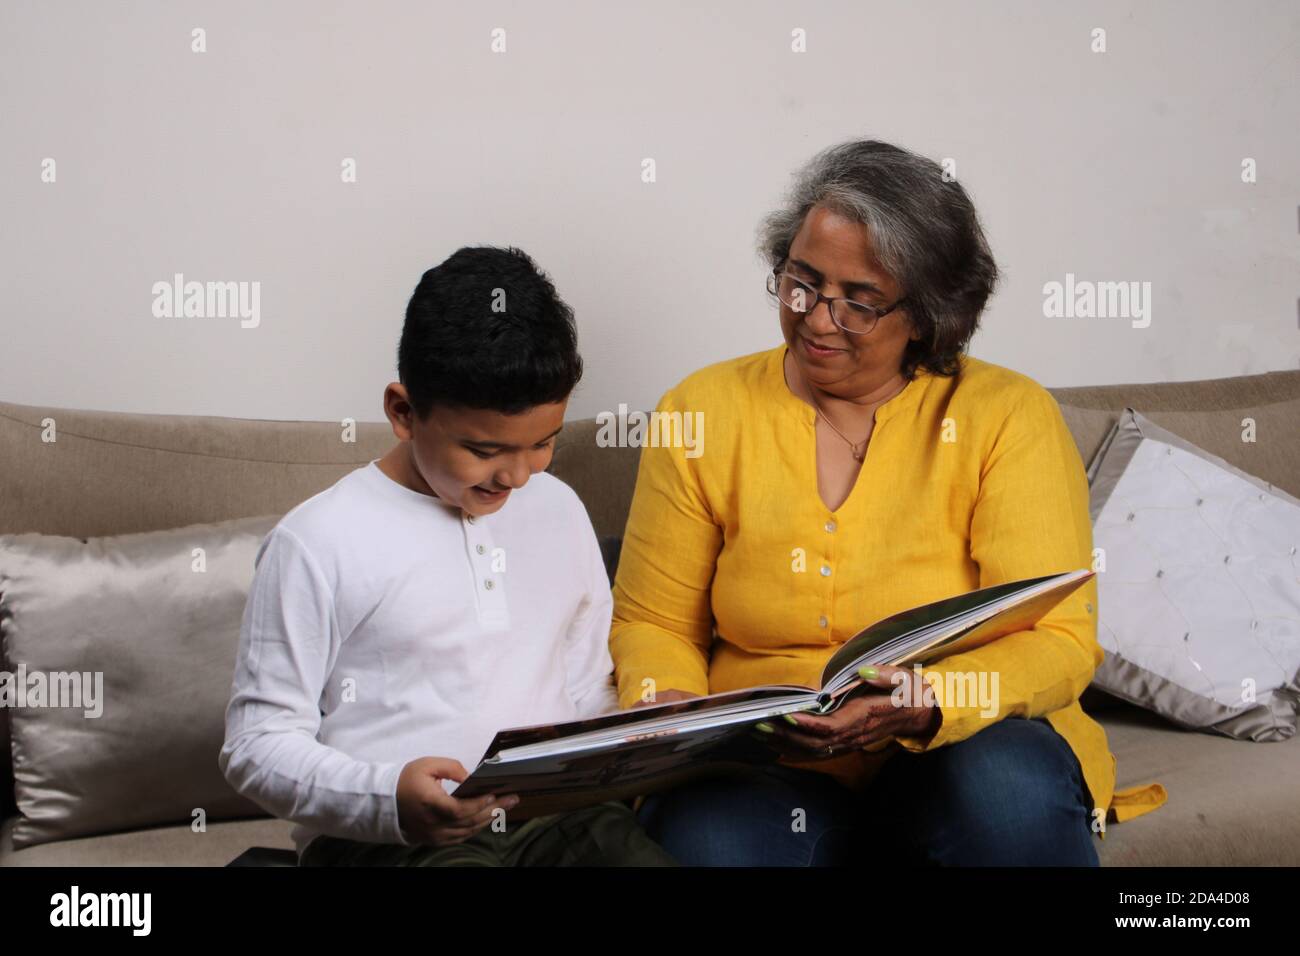 Glückliche Momente mit Oma, indische/asiatische ältere Dame verbringen gute Zeit mit ihrem Enkel Buch zusammen lesen. Stockfoto